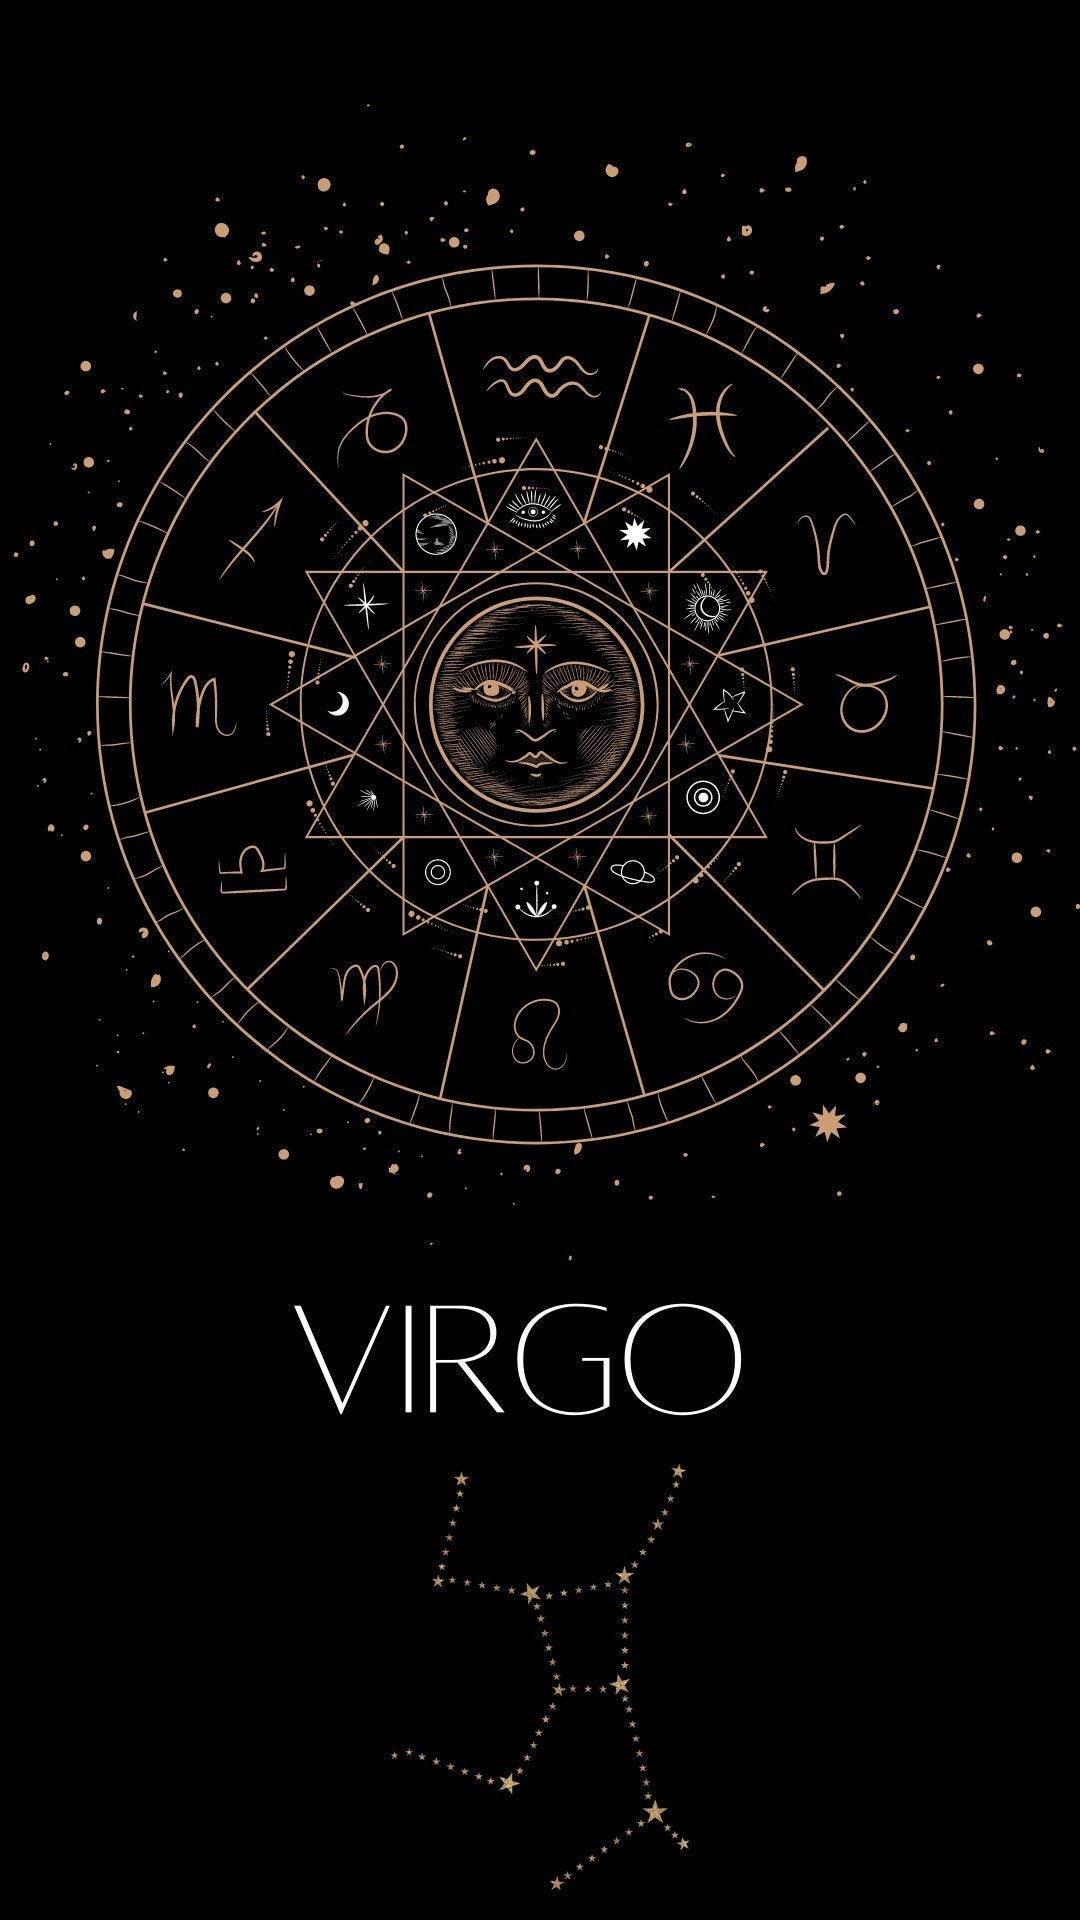 Virgo hình nền điện thoại di động là lựa chọn tuyệt vời cho những ai thích sự đơn giản và sang trọng. Thông qua những bức tranh ví von, hình ảnh thực tế hay các mẫu màu độc đáo, Virgo đã trở thành một chủ đề được yêu thích trong khoảng nhiều năm qua.